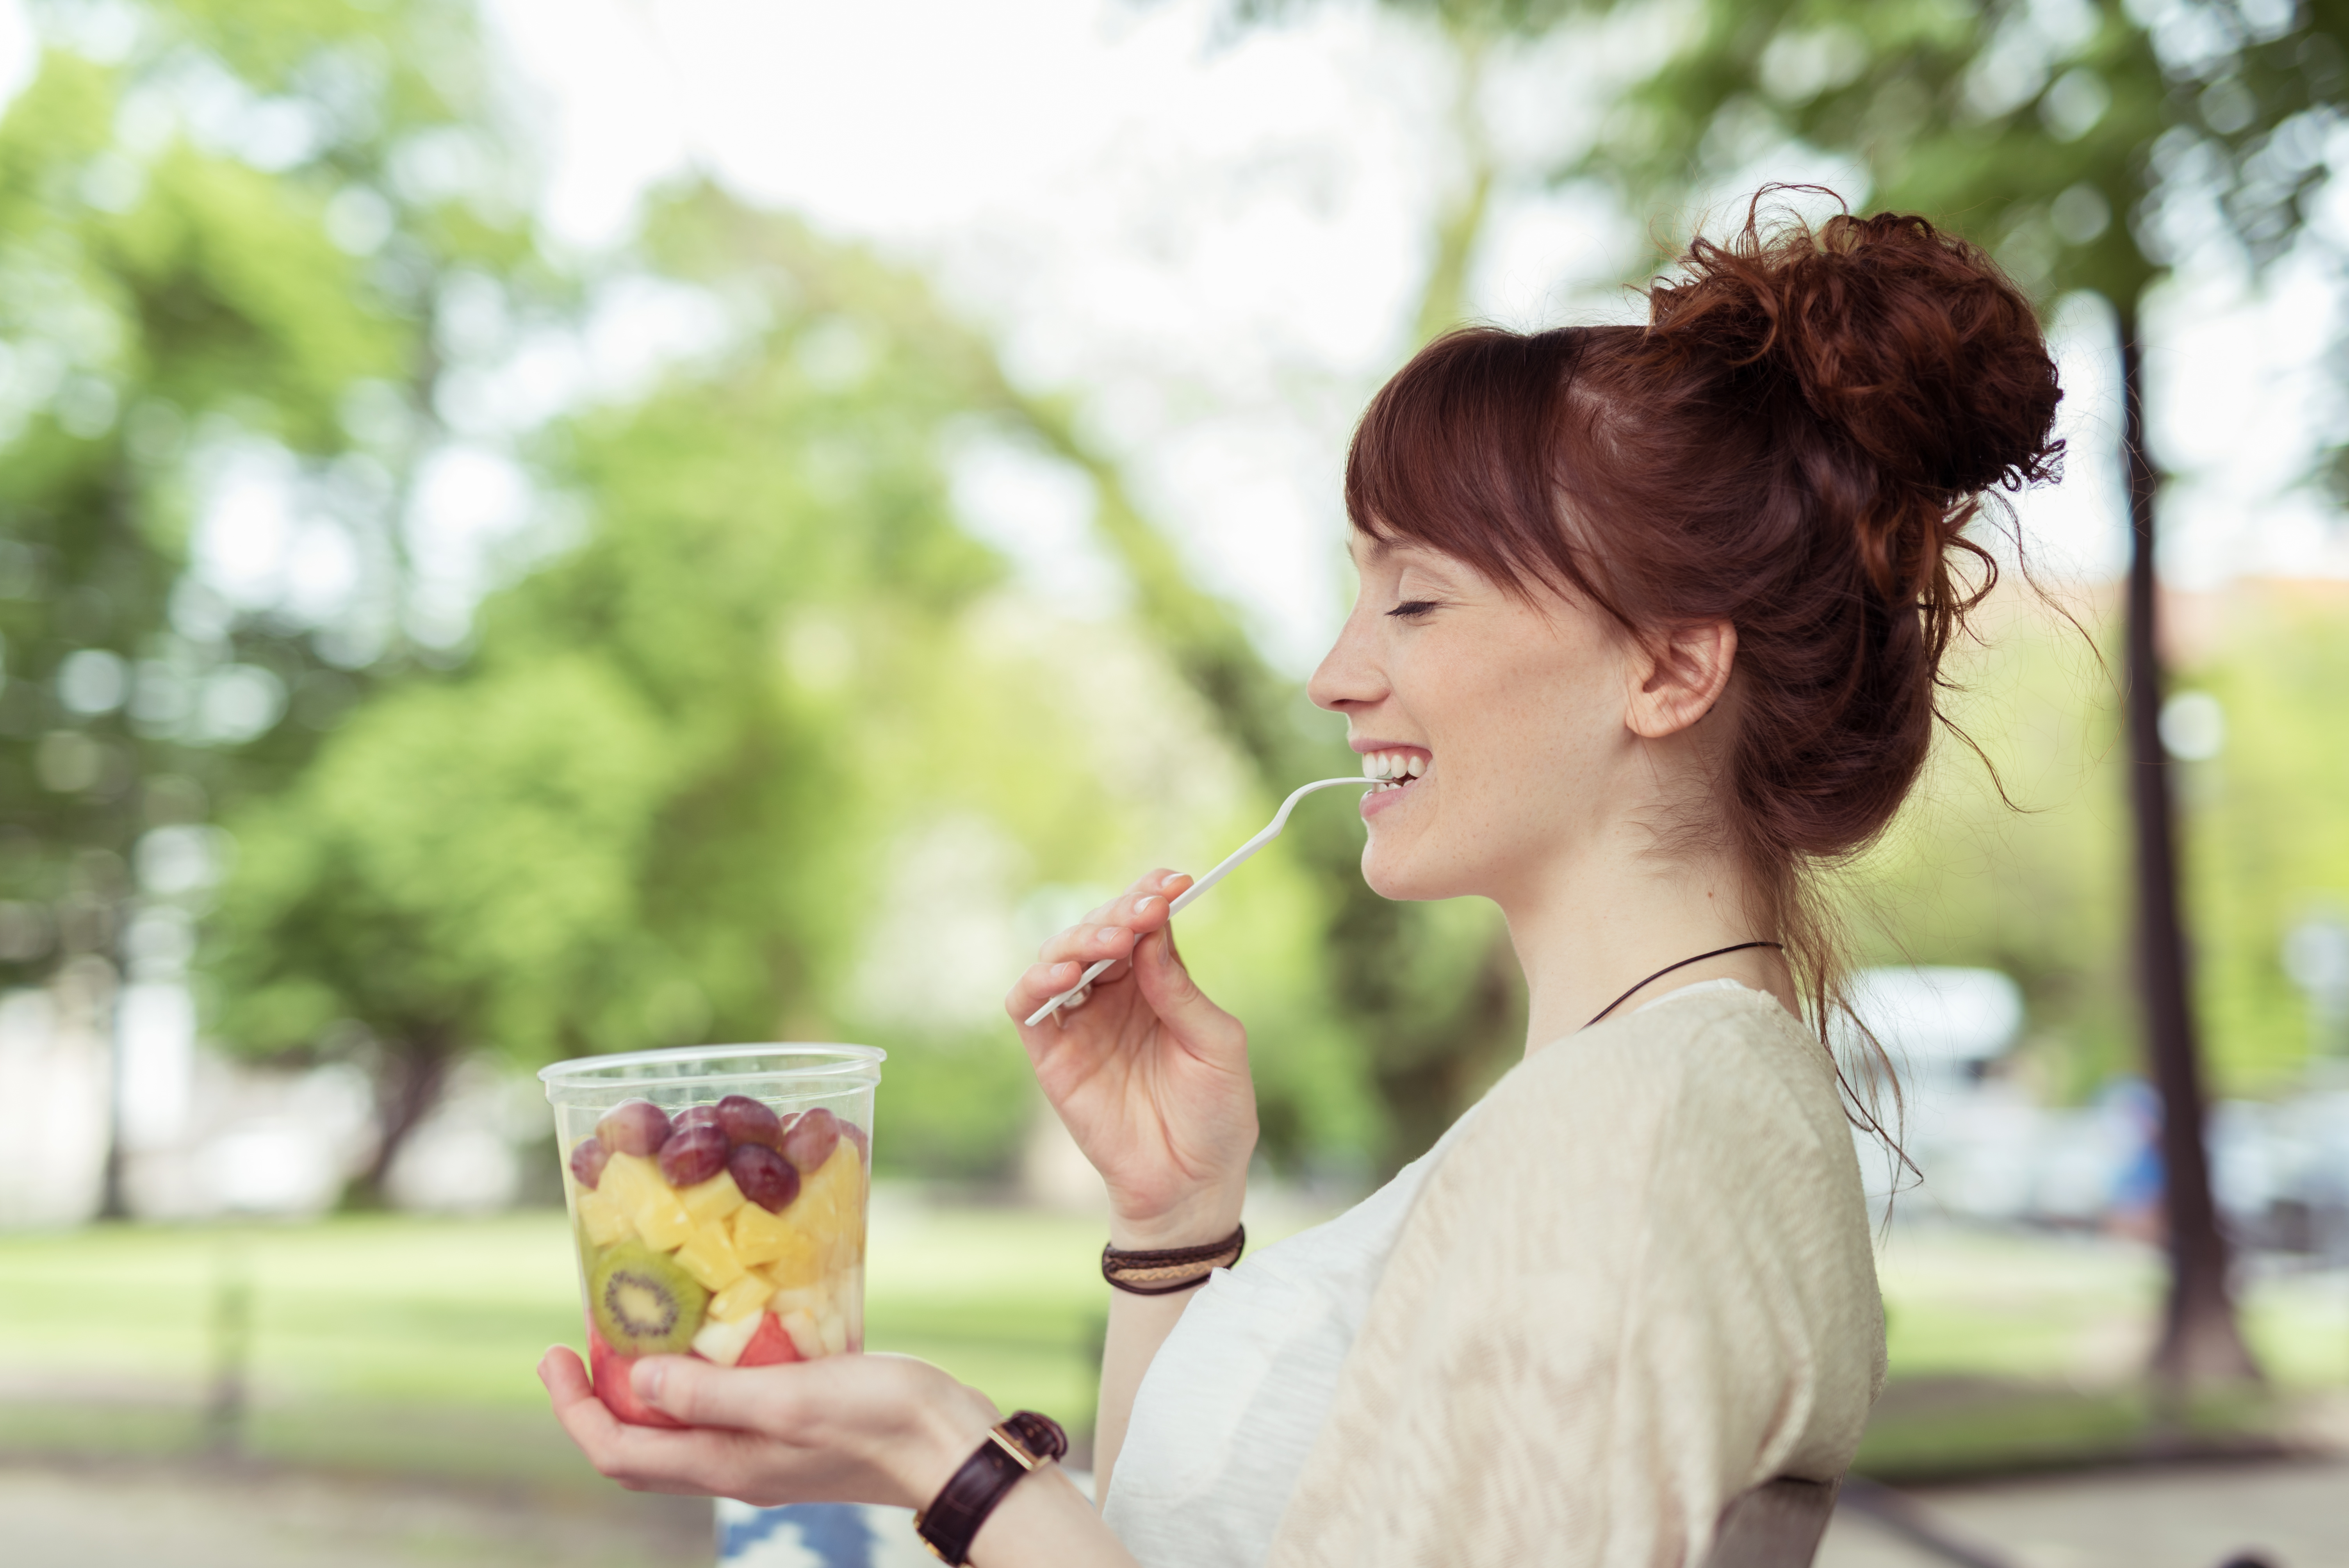 Woman eating fruit salad outside